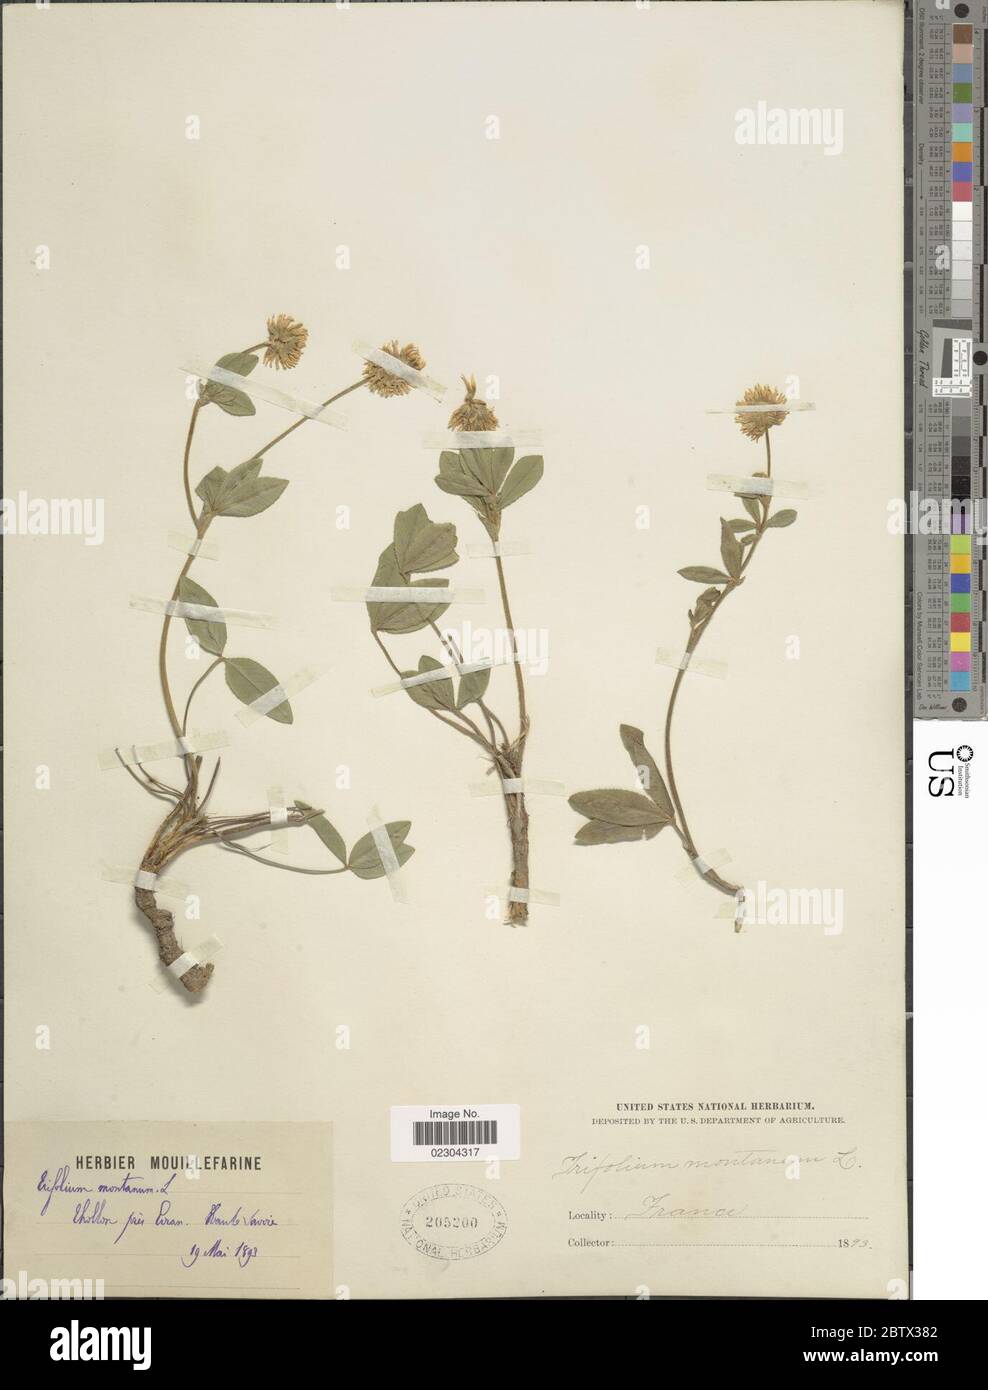 Trifolium montanum L. Stock Photo